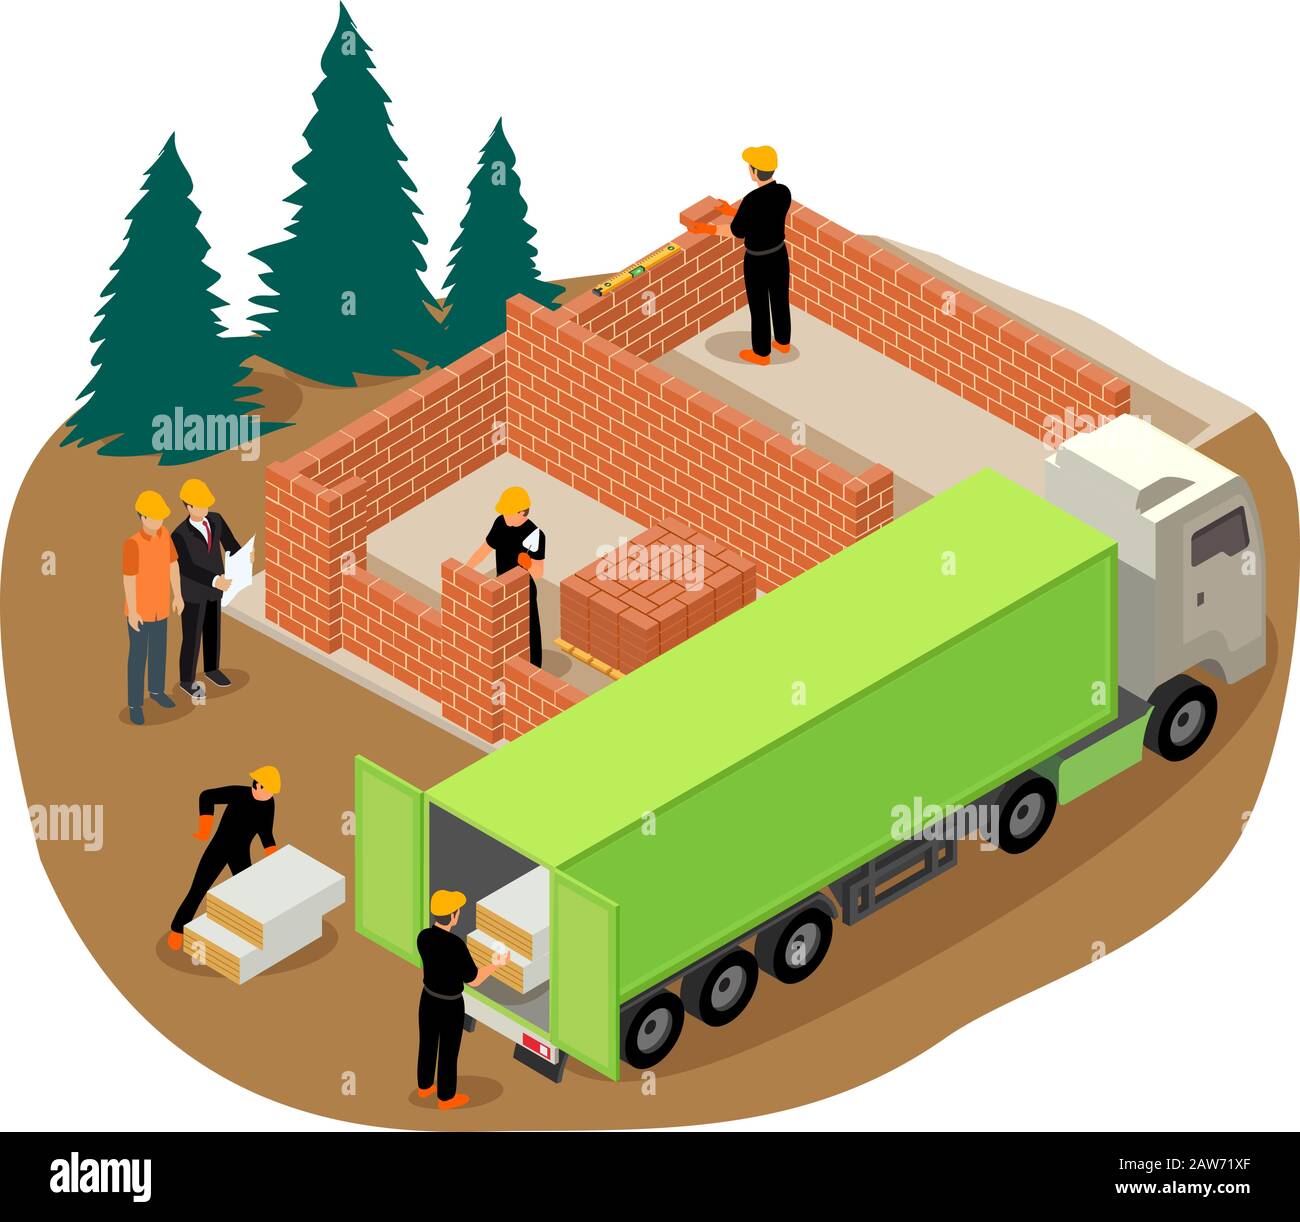 Illustrazione isometrica vettoriale dei lavoratori che costruiscono una casa privata in mattoni e che scaricano l'isolamento da un camion Illustrazione Vettoriale